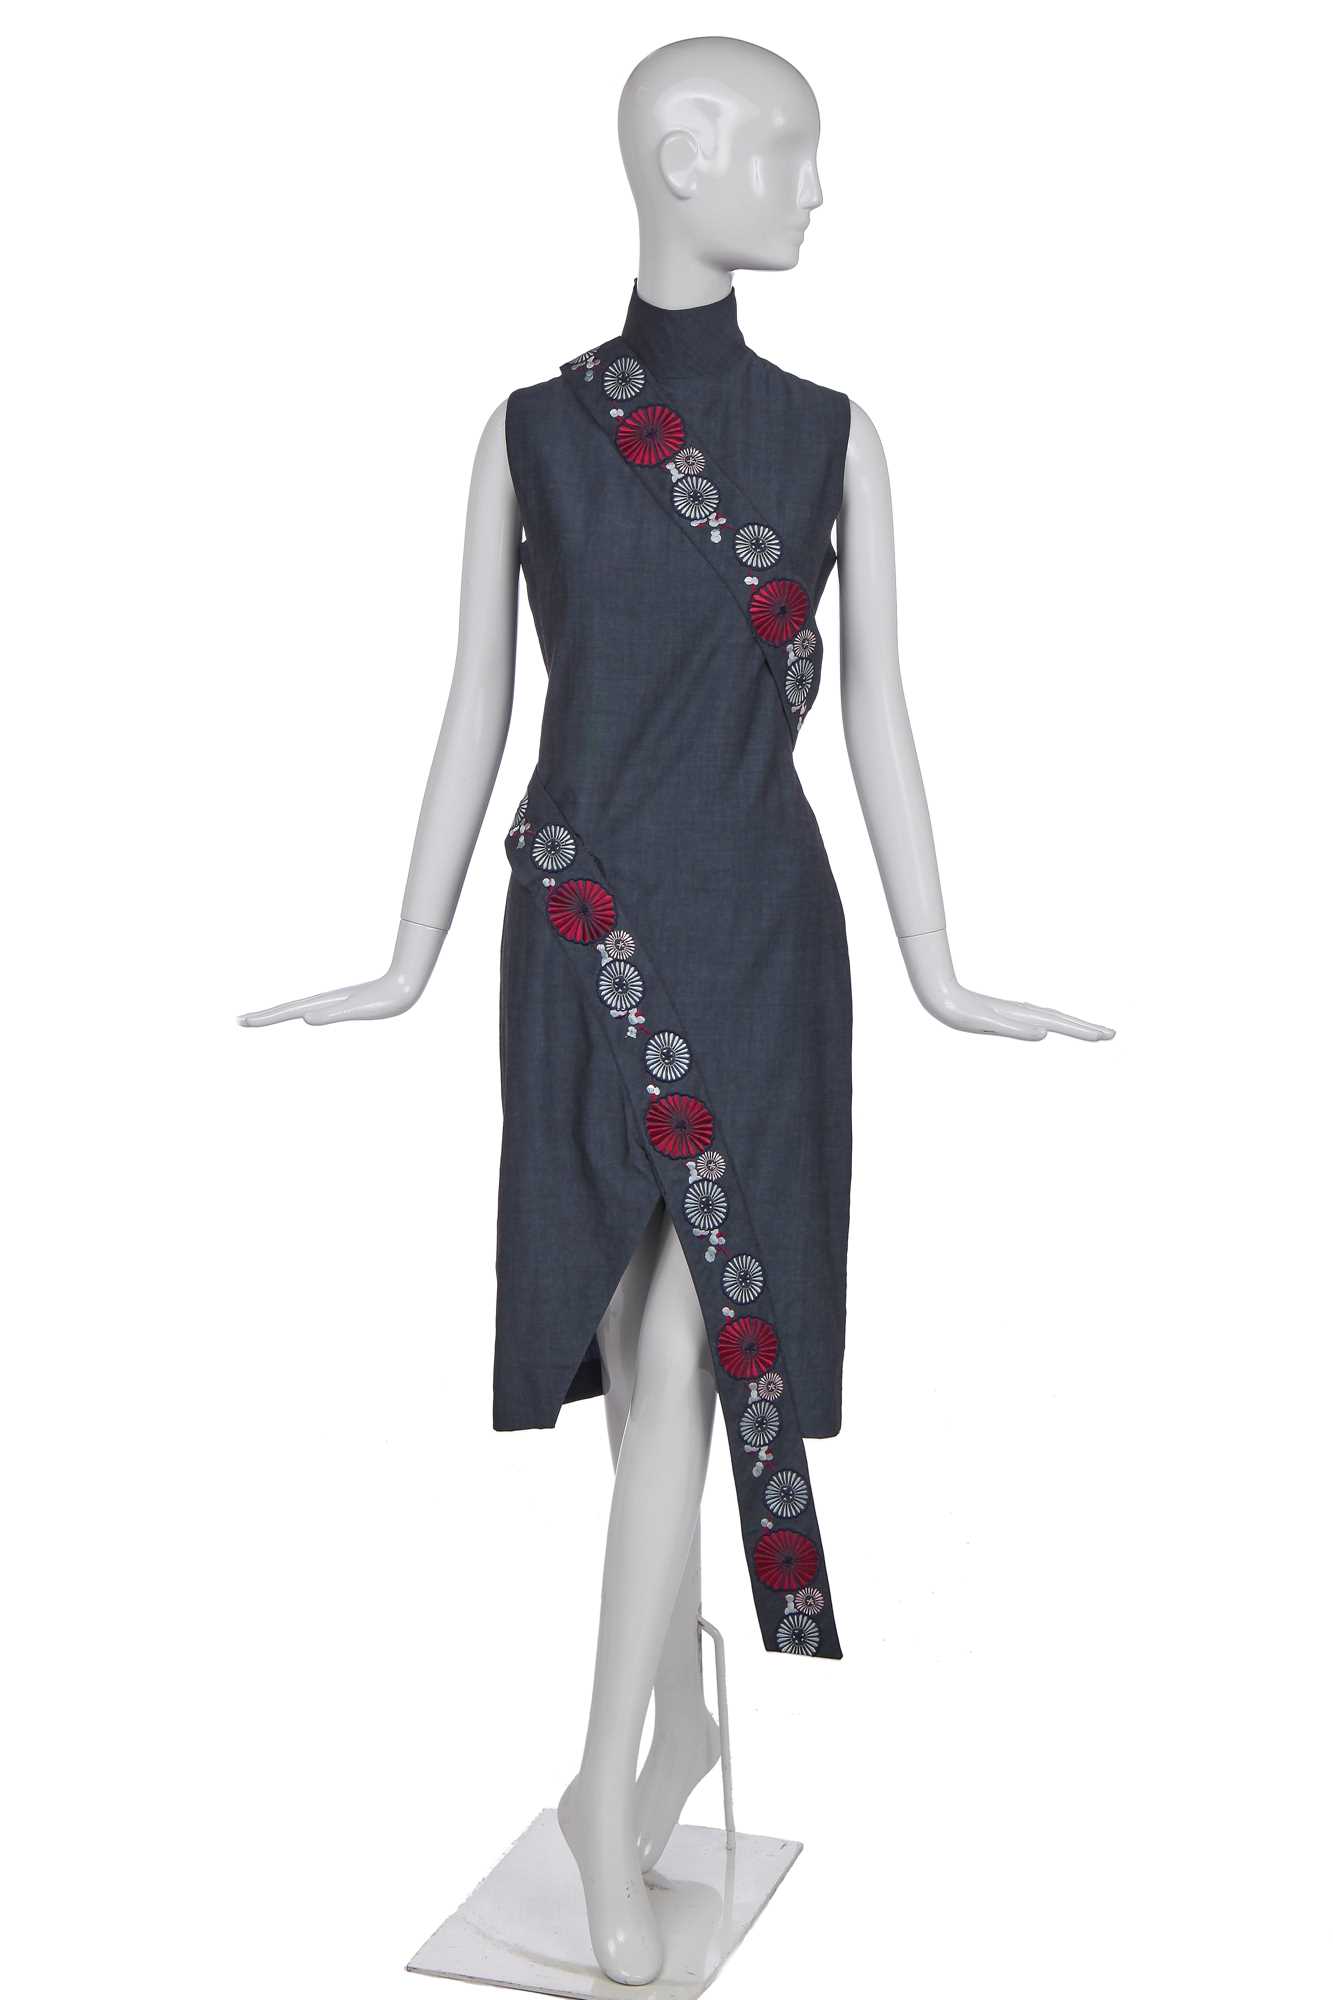 Lot 133 - An Alexander McQueen steel-grey wool dress, 'Voss' collection, Spring/Summer 2001